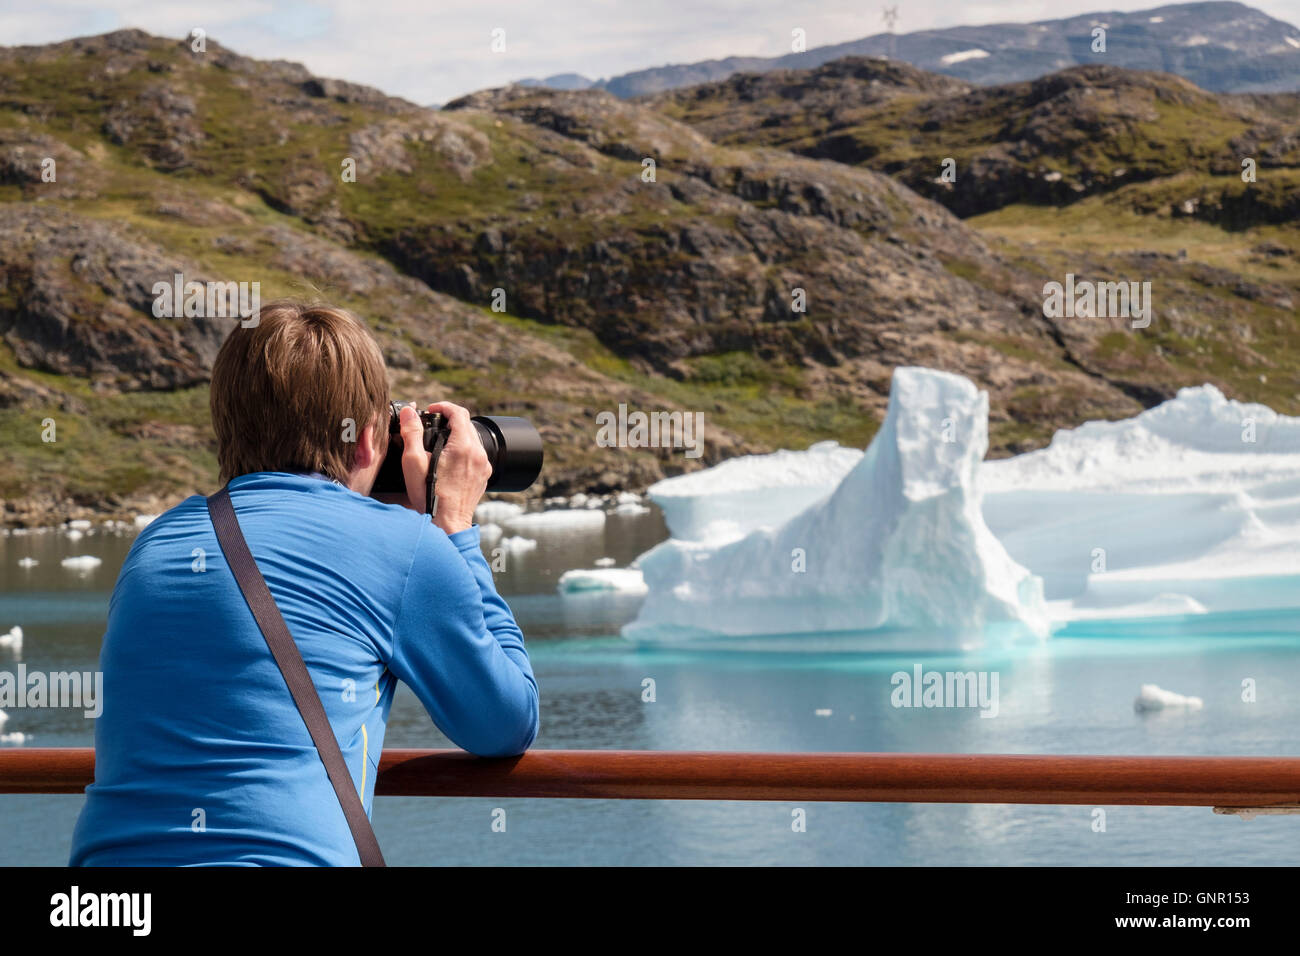 Alamy viajar fotógrafo fotografiar icebergs de pasajeros barco de crucero en el fiordo Tunulliarfik en verano. Narsaq sur de Groenlandia Foto de stock